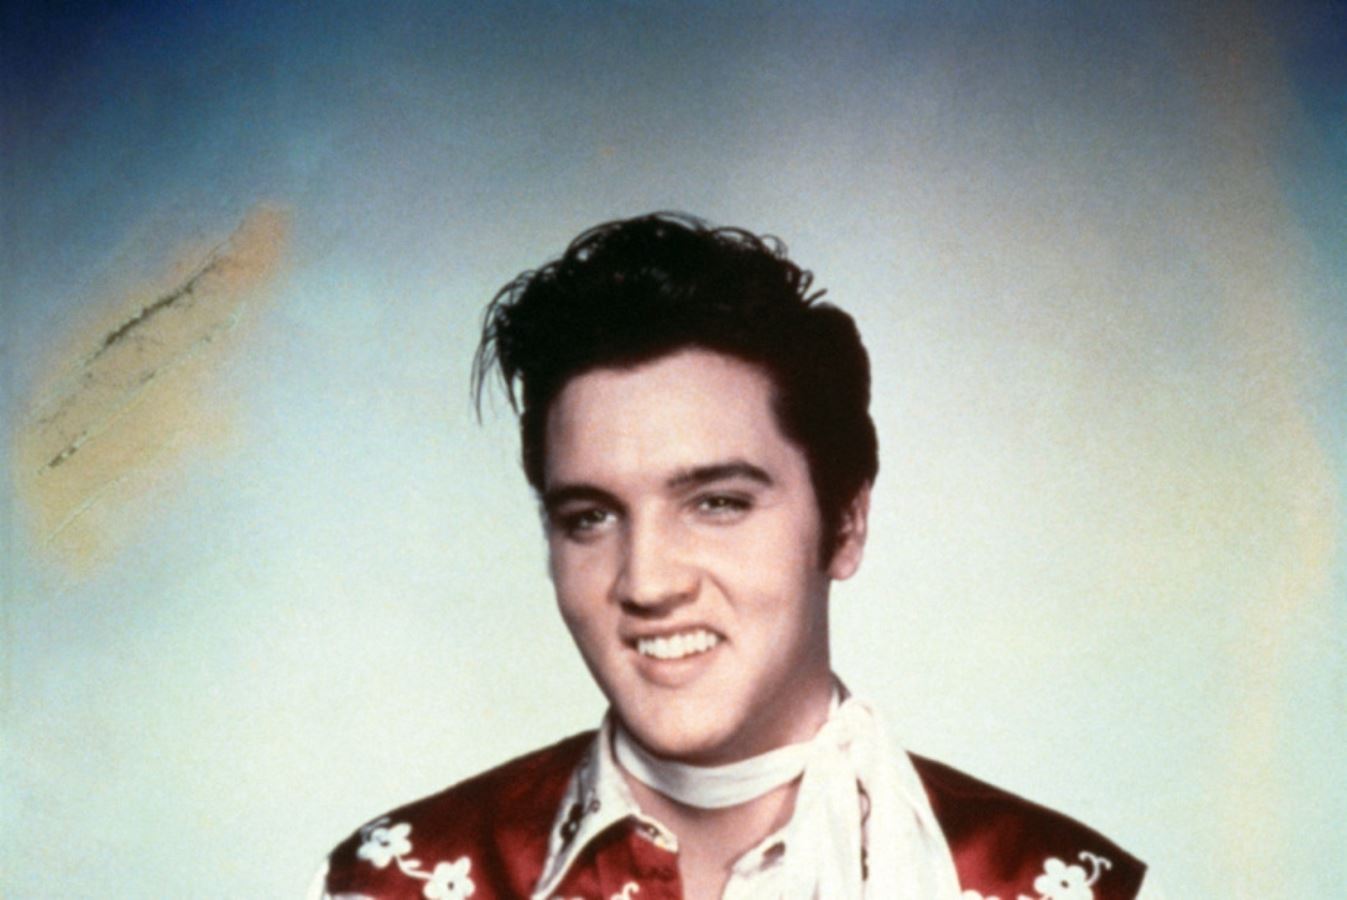 <p><strong>'Rock and Roll Kralı'</strong> olarak bilinen<strong> Elvis Presley (1935-1977)</strong>, 1950'lerin ortalarında ün kazandı ve kısa sürede 20. yüzyılın en ikonik ve etkili müzisyenlerinden biri oldu. Rock and roll'u popülerleştirerek bir müzik devrimi başlatmasıyla tanınır. İlk single'ı'Heartbreak Hotel', müzik tarihinin akışını sonsuza dek değiştirdi.</p> <p>Canlı şovları medyada büyük yankı uyandırdı ve kültürel bir fenomen haline geldi. <strong>"Kral"</strong> olarak ünlenmesi, ABD'de Billboard'un<strong> Hot 100 pop</strong> listesinde yer alan toplam 149 şarkısıyla ve inanılmaz müzik kariyerinden kaynaklanmaktadır.</p> <p>İşte Rock'n Roll'un kralı Elvis Presley hakkında 10 büyüleyici gerçek...</p>